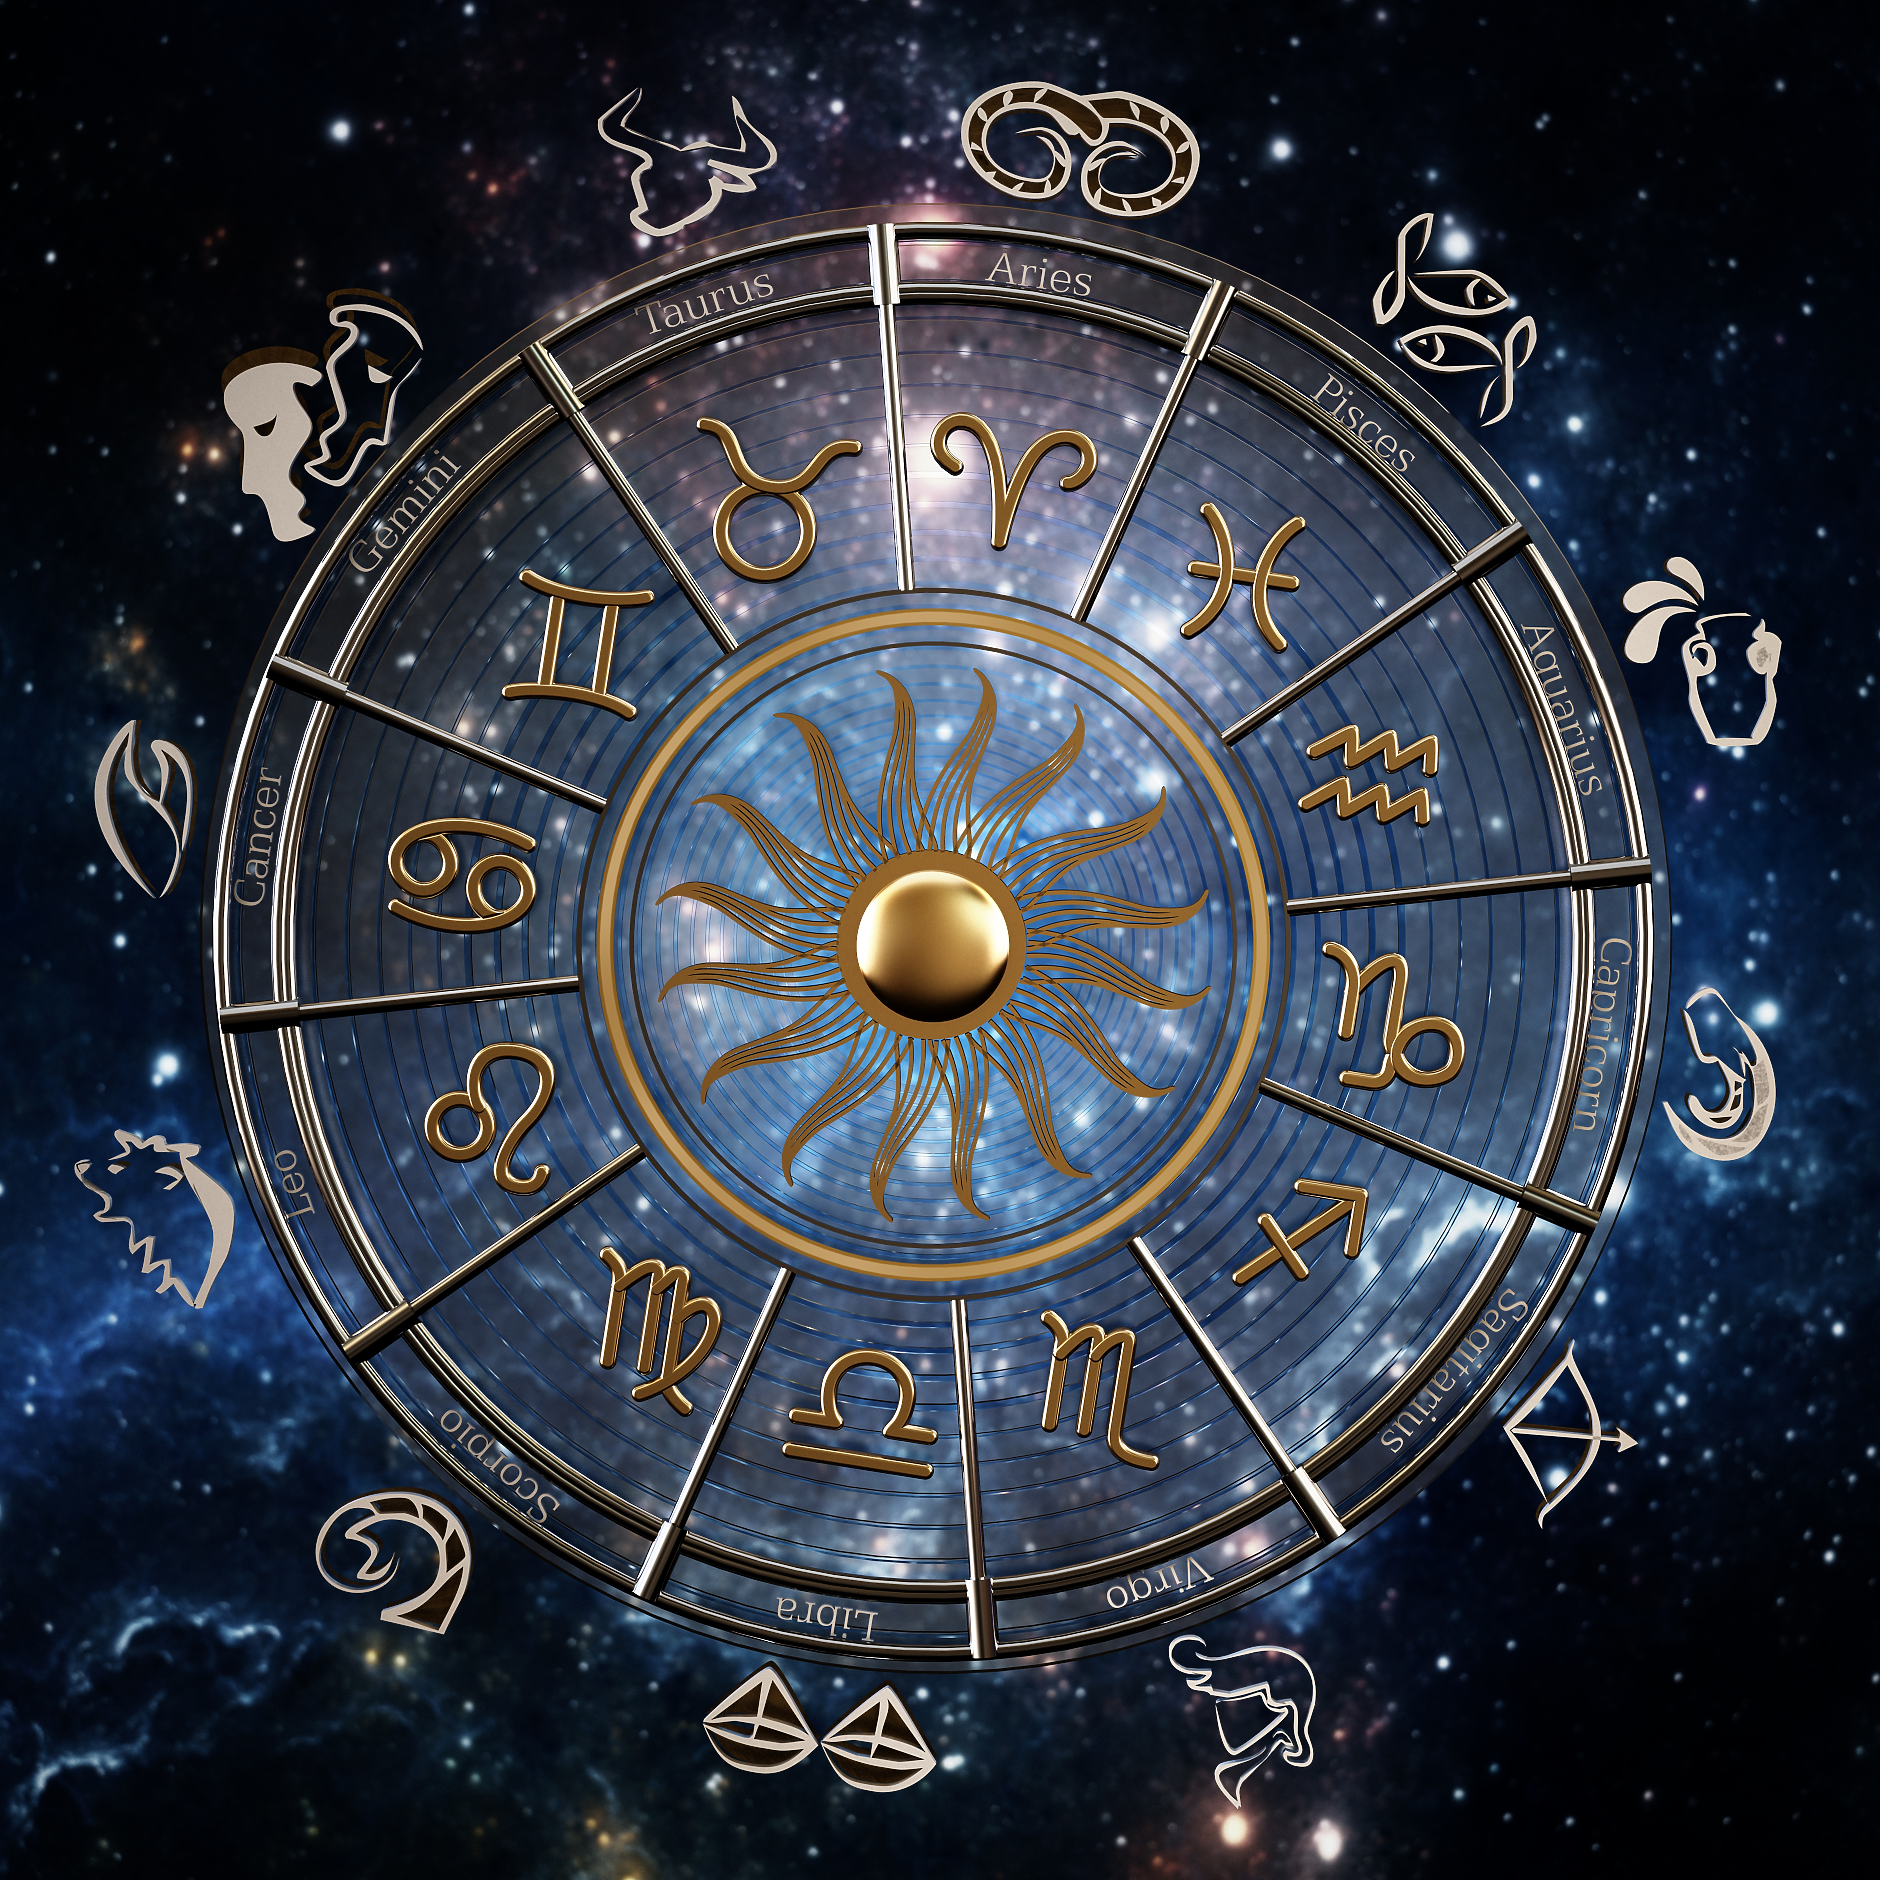 Седмичен хороскоп: Звездите за бизнеса от 20 до 26 ноември